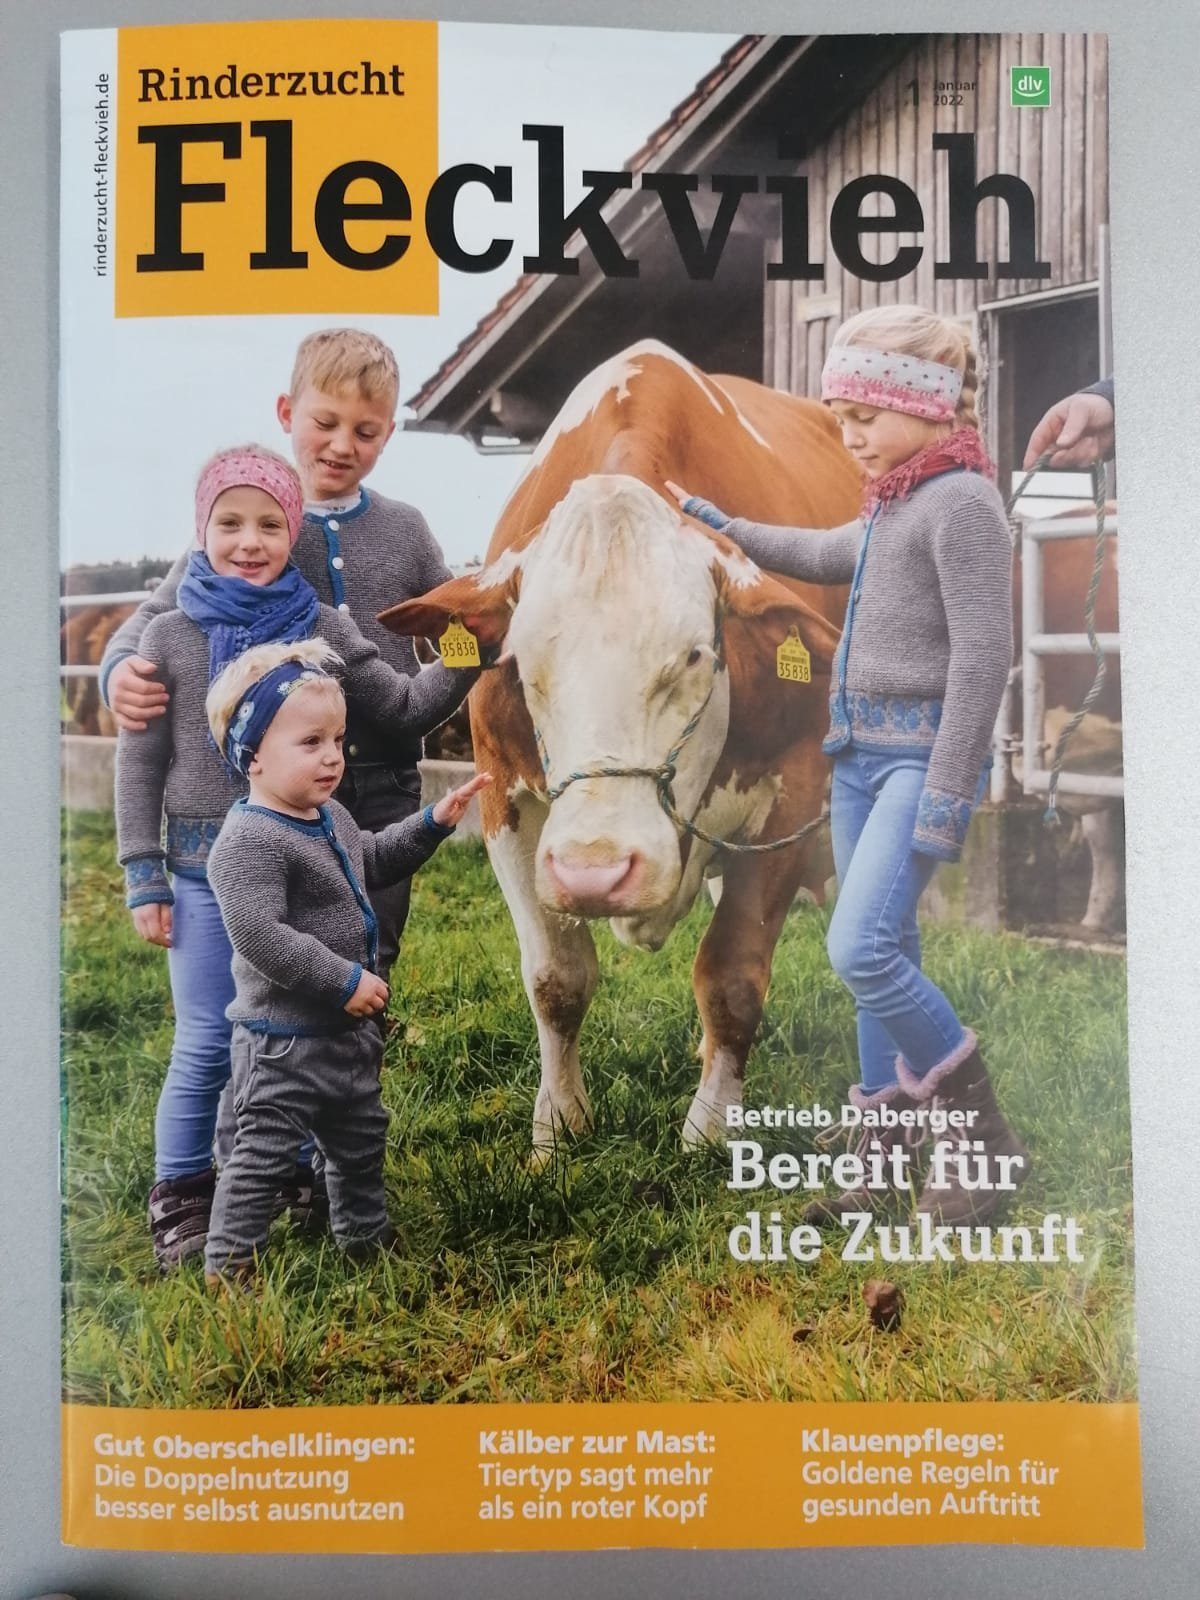 Familie Plunger in der aktuellen Rinderzucht Fleckvieh Zeitschrift